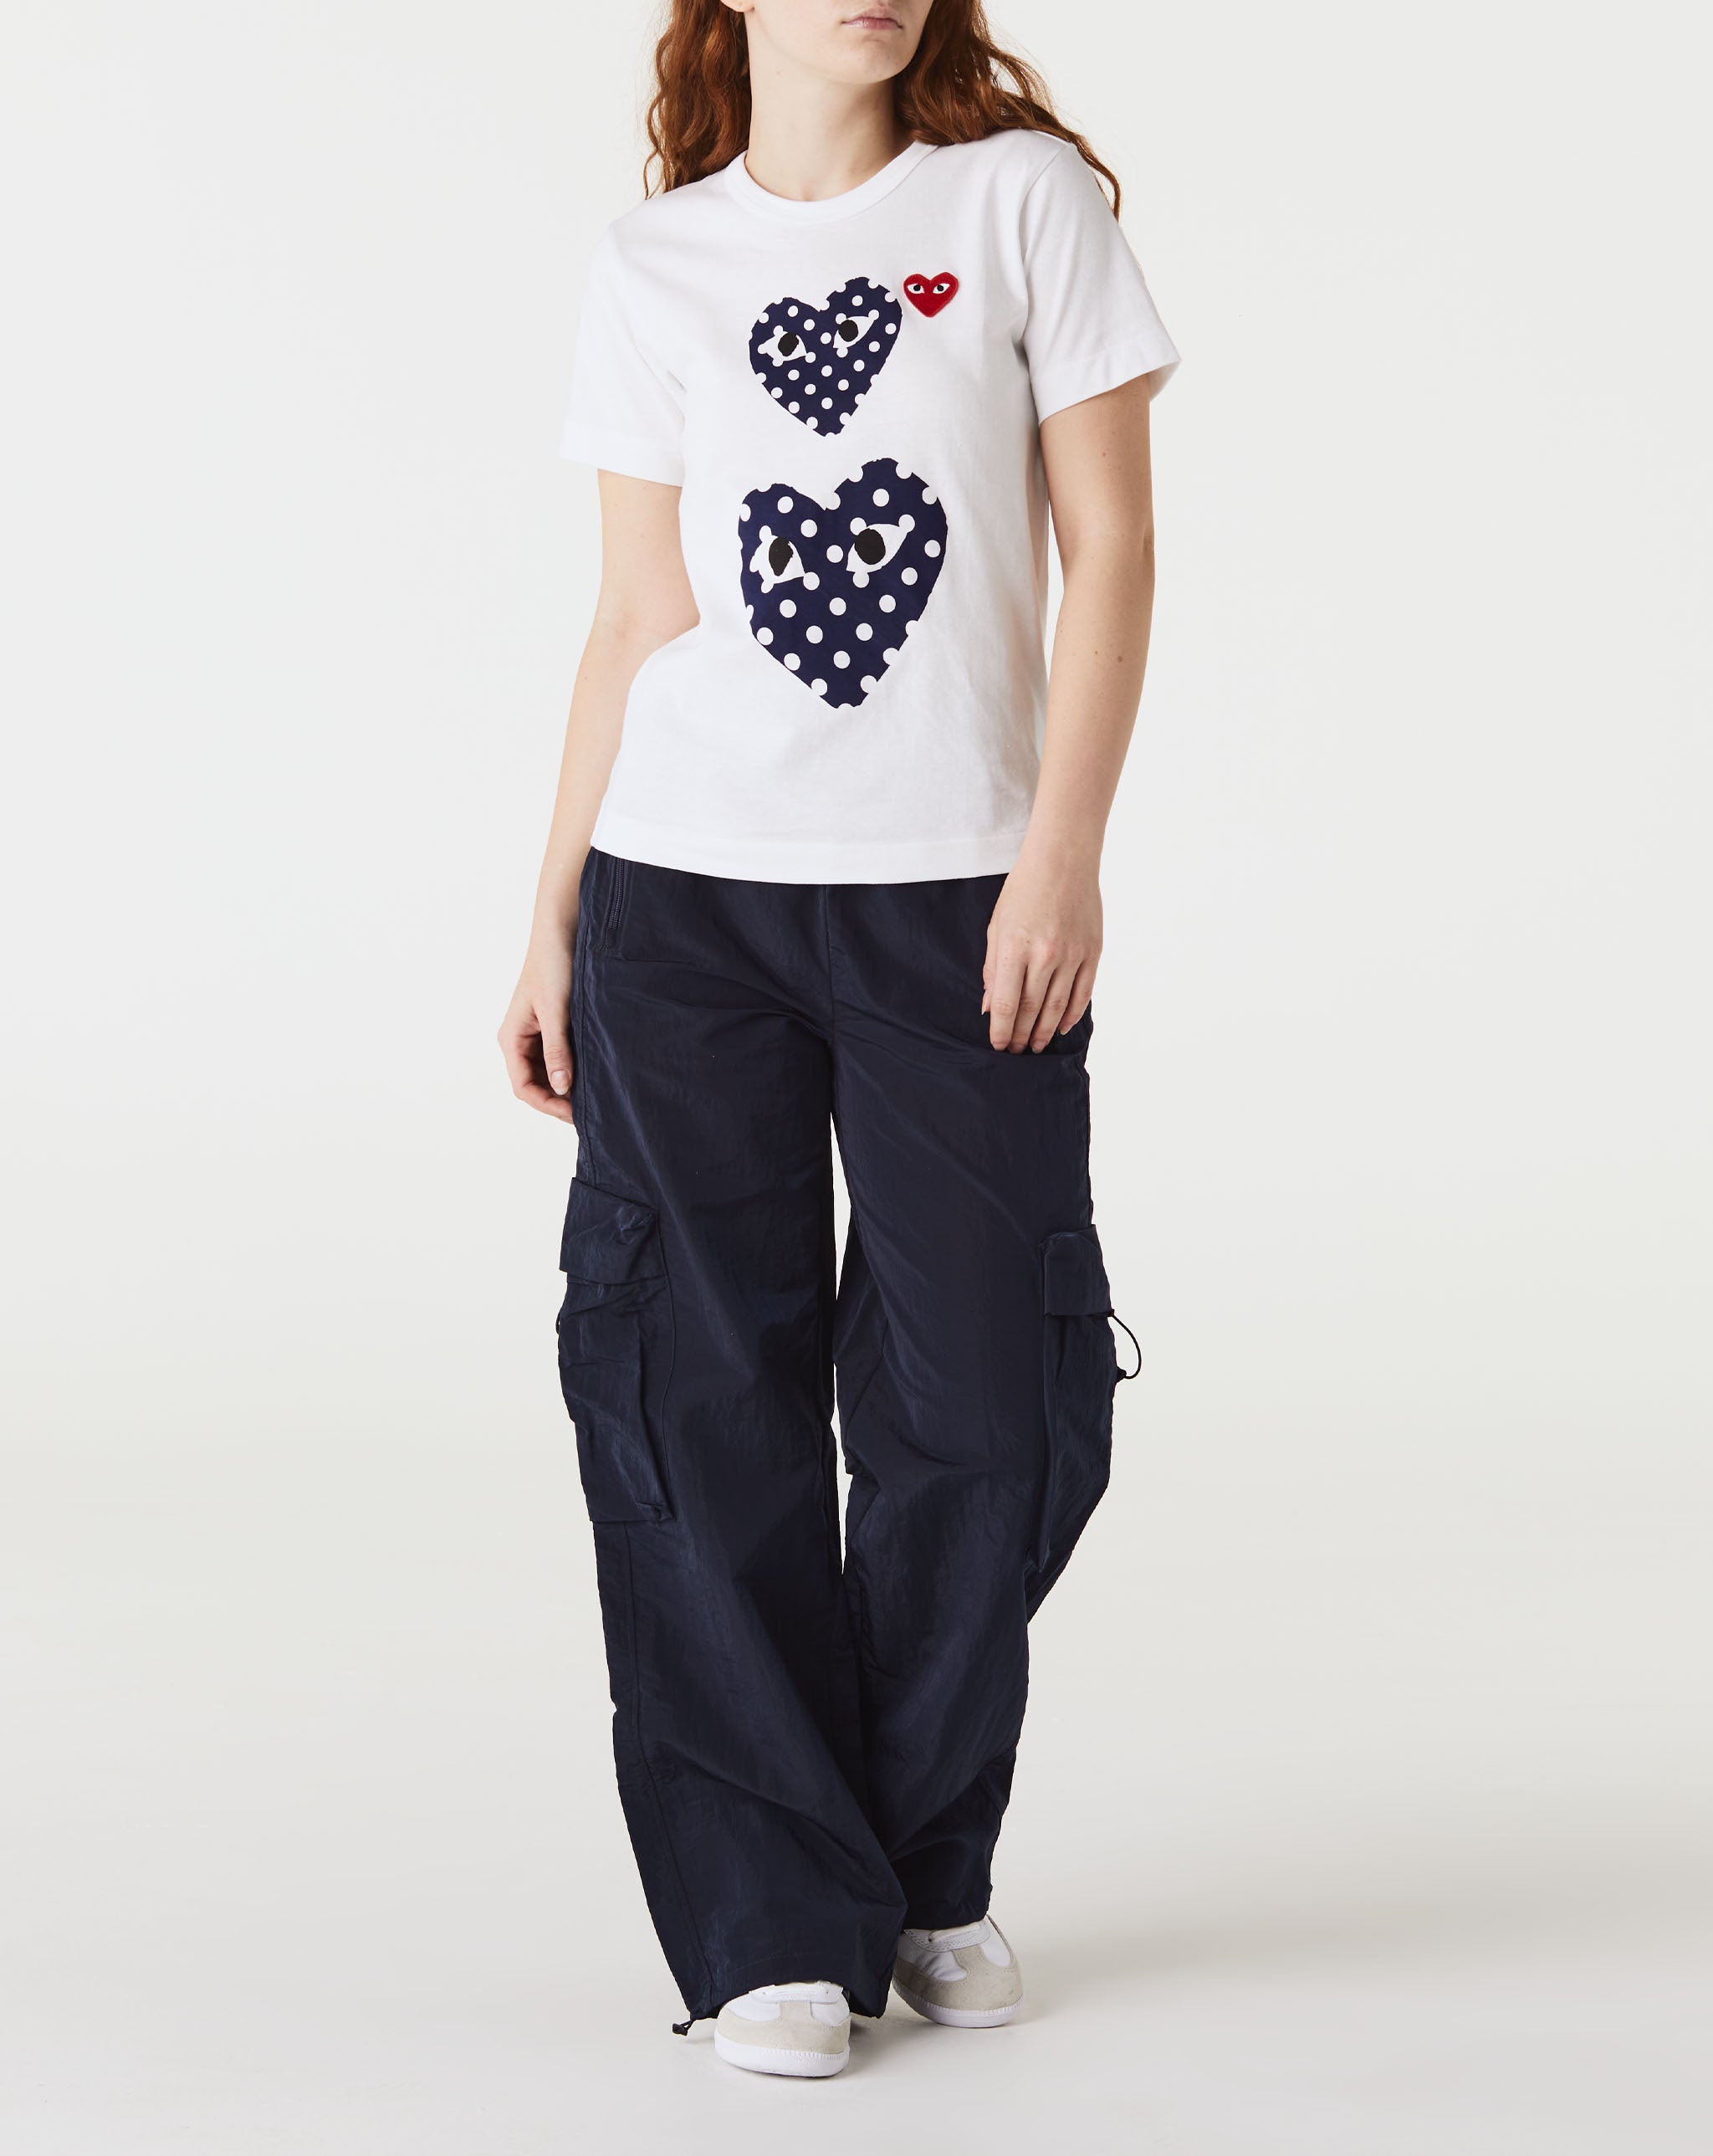 Womens Double Camo Heart T-Shirt Women's Double Polka Dot Heart T-Shirt  - Cheap Urlfreeze Jordan outlet